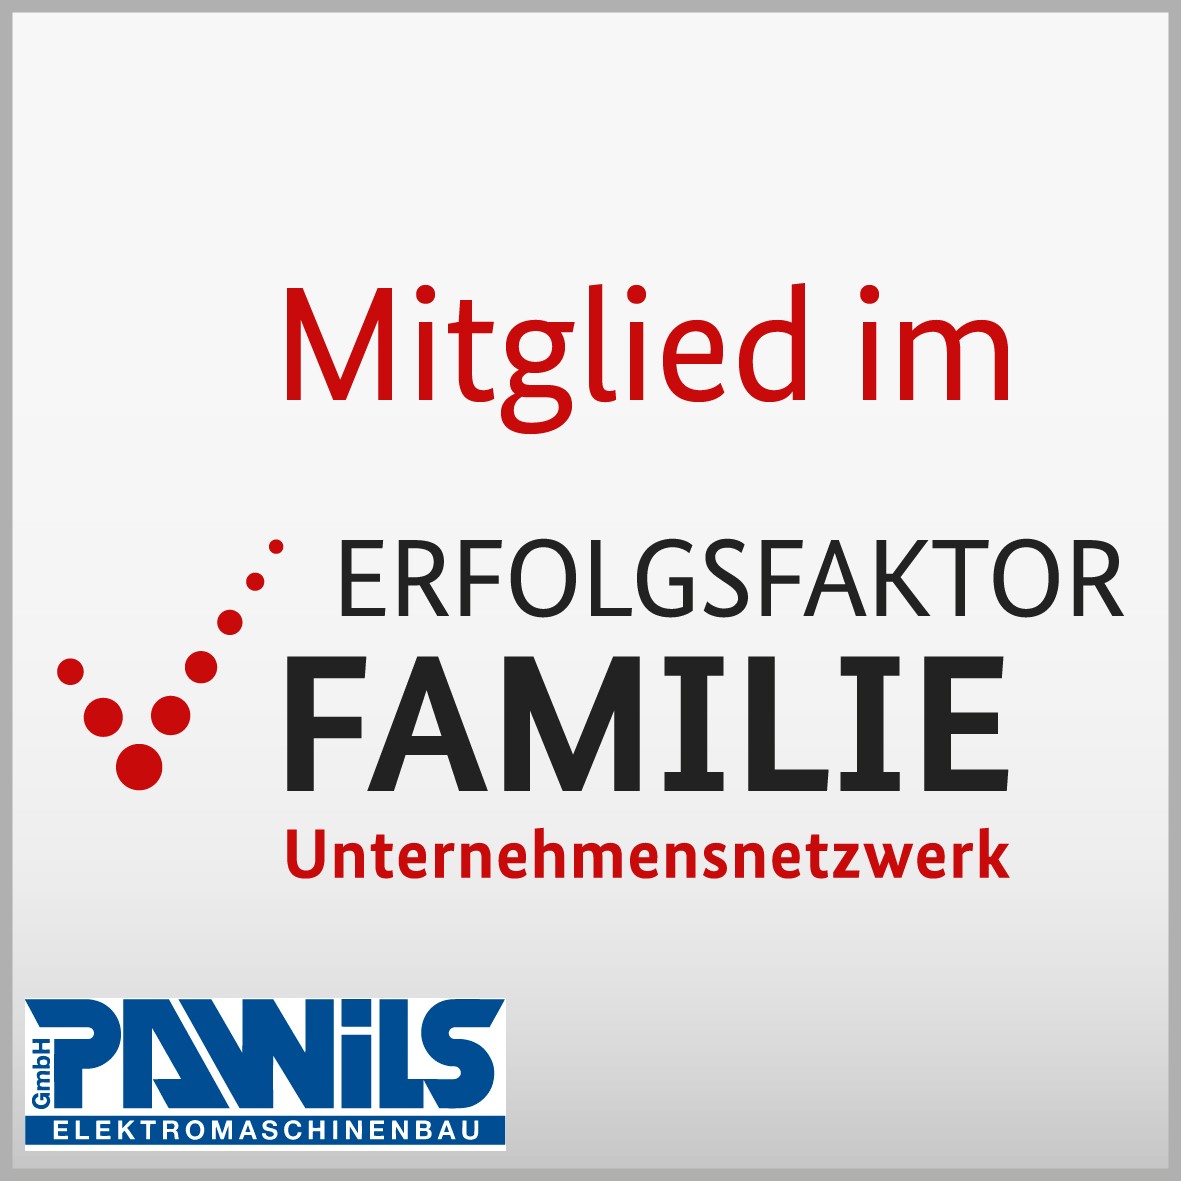 Pawils erhält Mitgliederlogo vom Unternehmensnetzwerk "Erfolgsfaktor Familie"